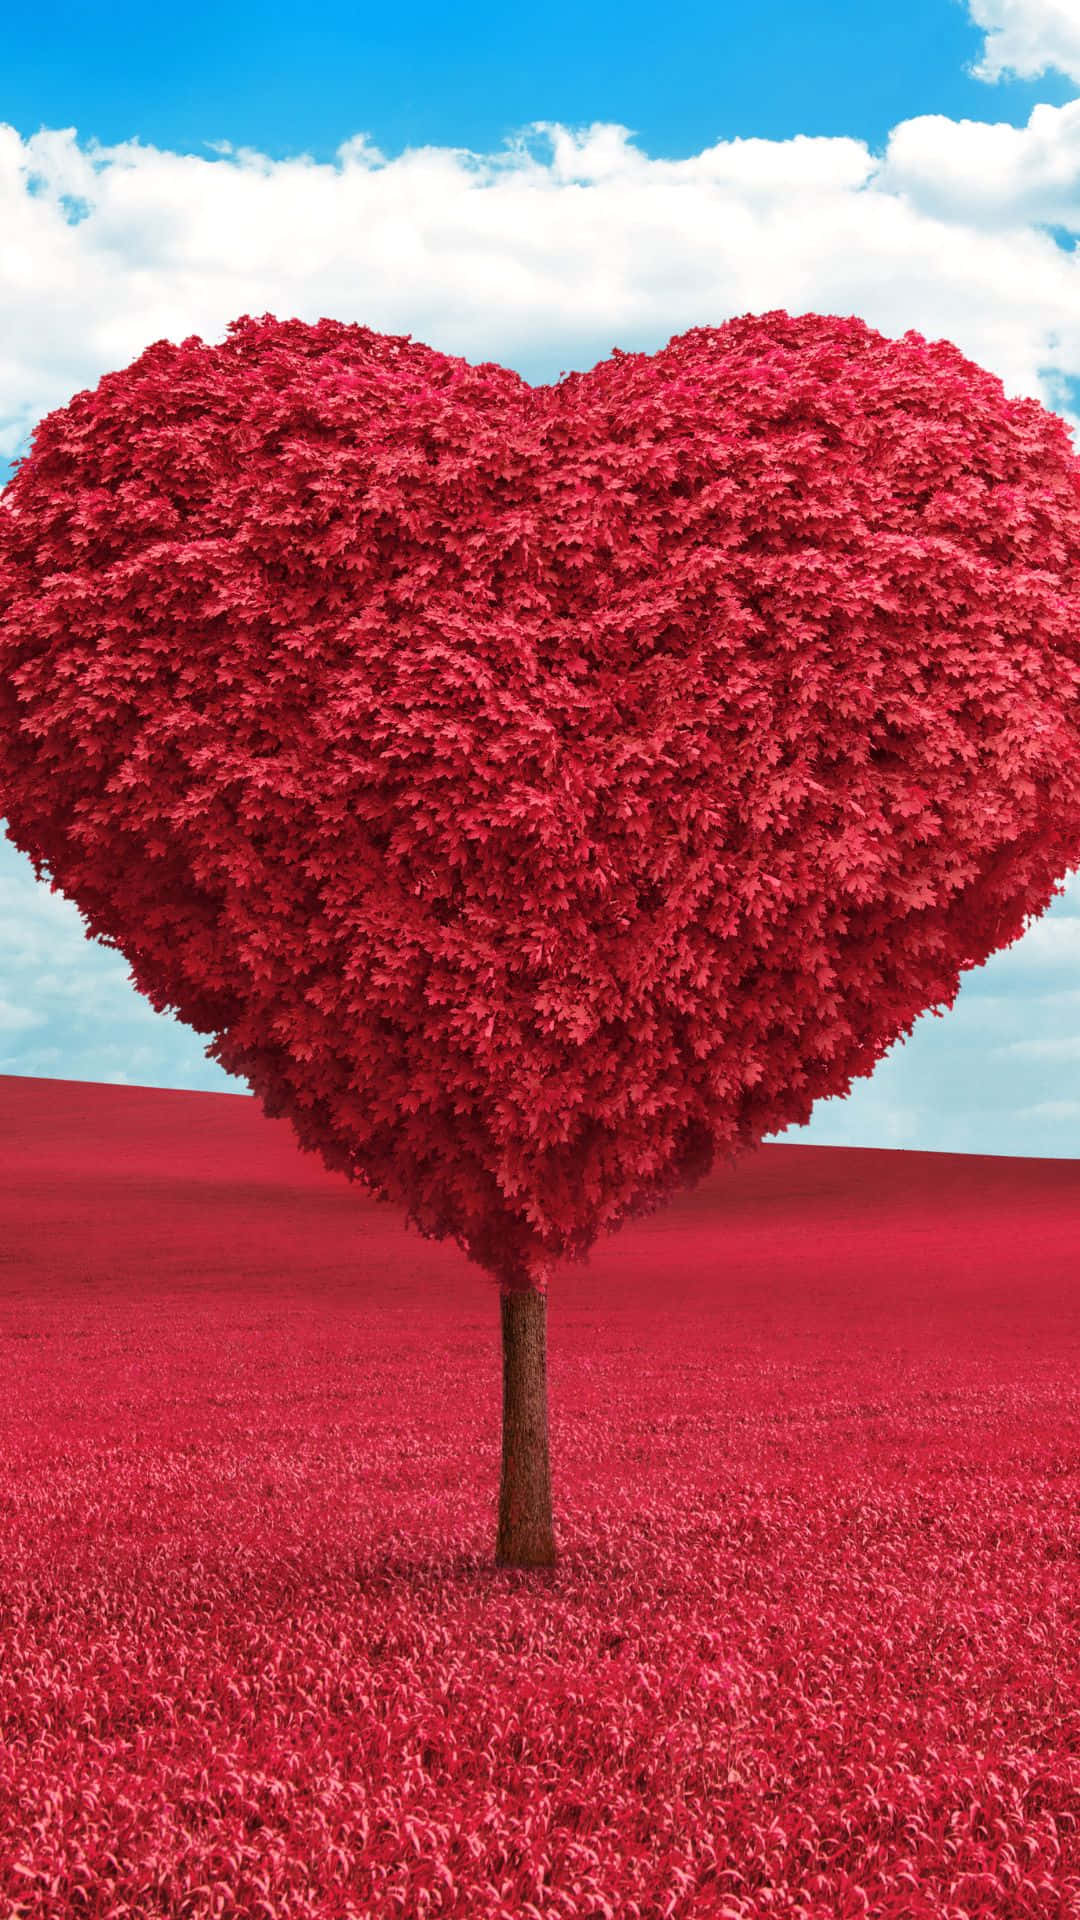 Umcoração Vermelho Em Forma De Árvore Em Um Campo, Como Papel De Parede Do Computador Ou Celular. Papel de Parede